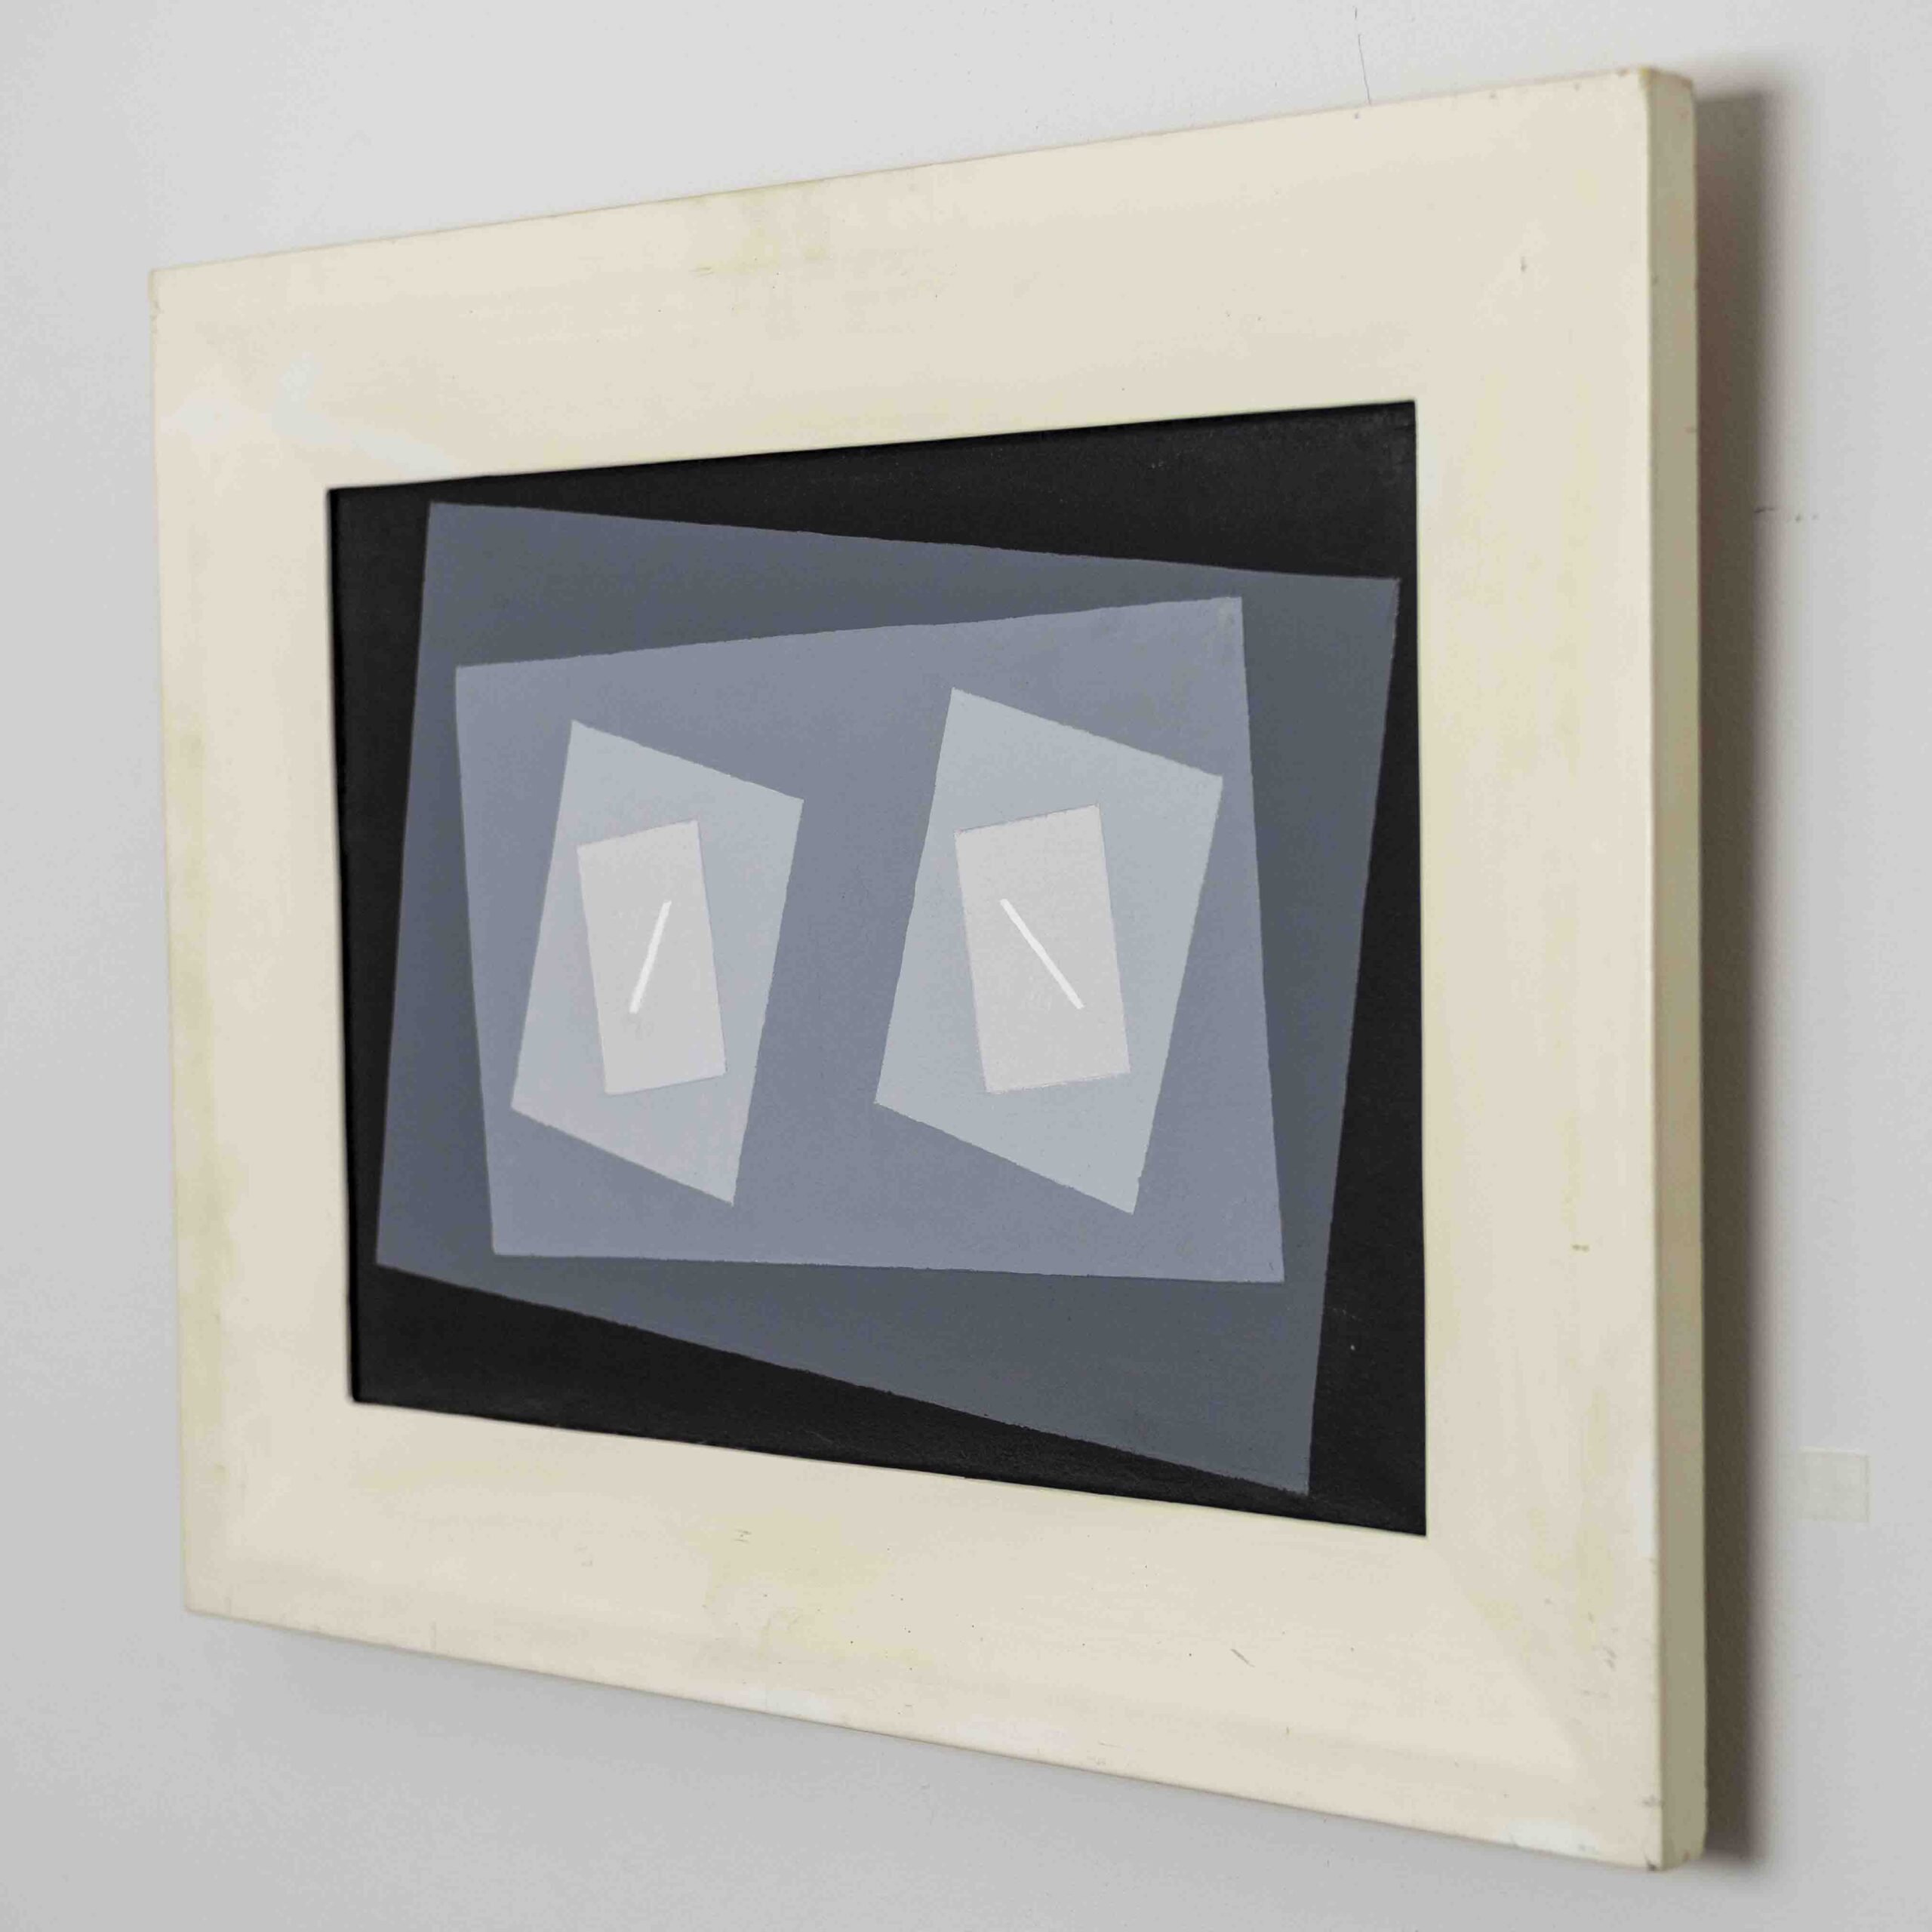 Pieter de Haard – “Compositie VII”, 1942 – oil on canvas